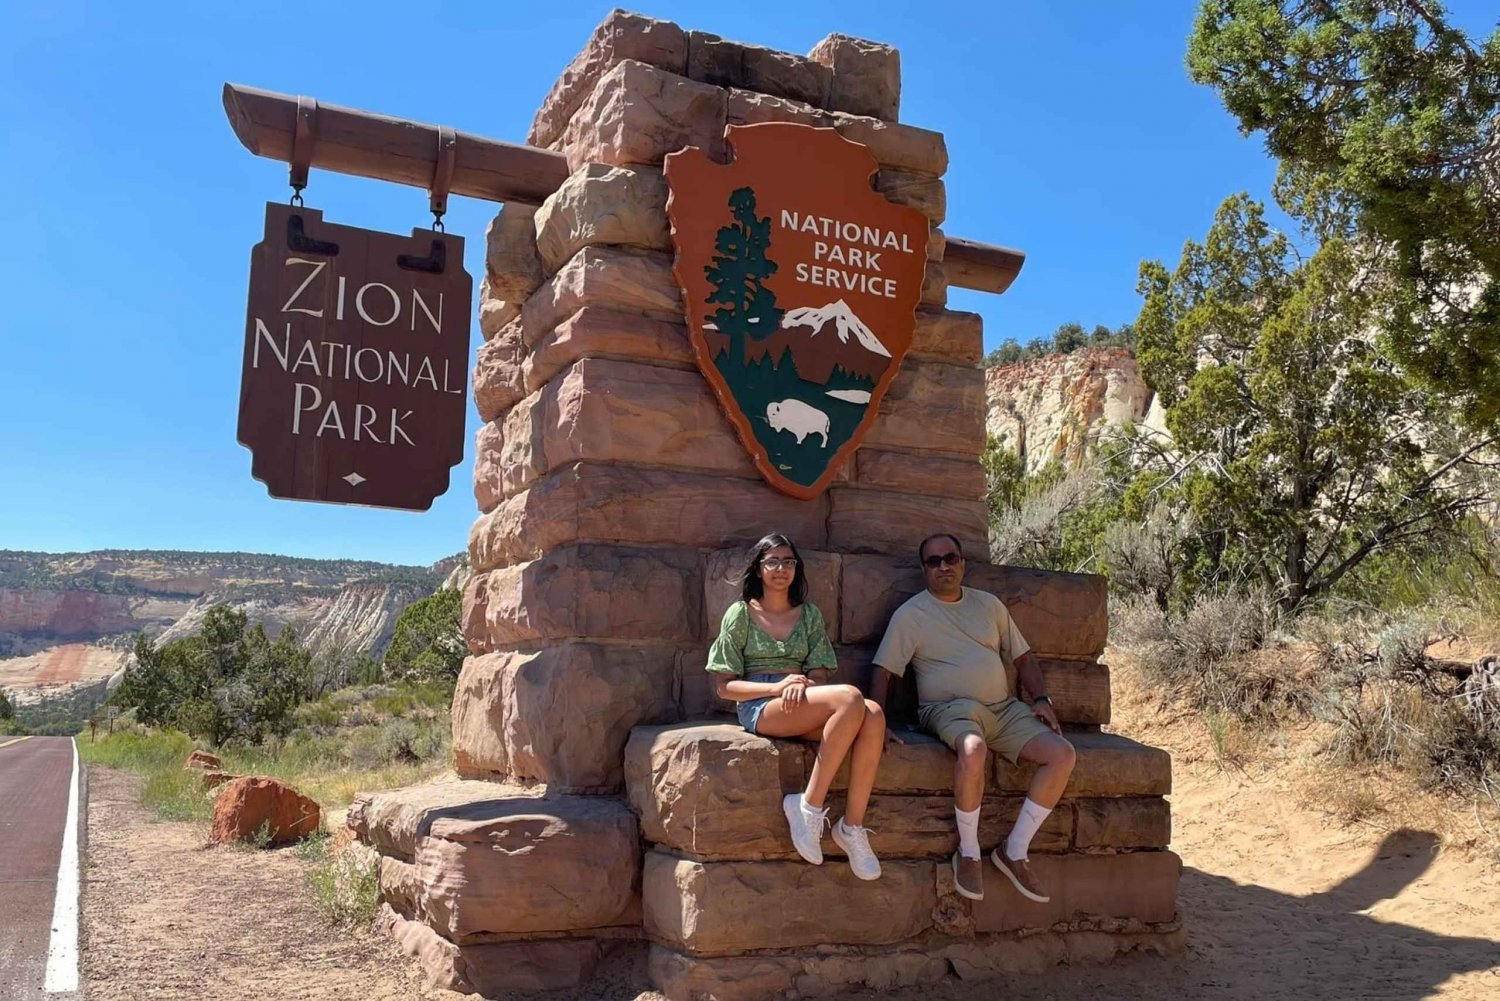 Fra Las Vegas: Bryce Canyon og Zion nasjonalpark - dagstur